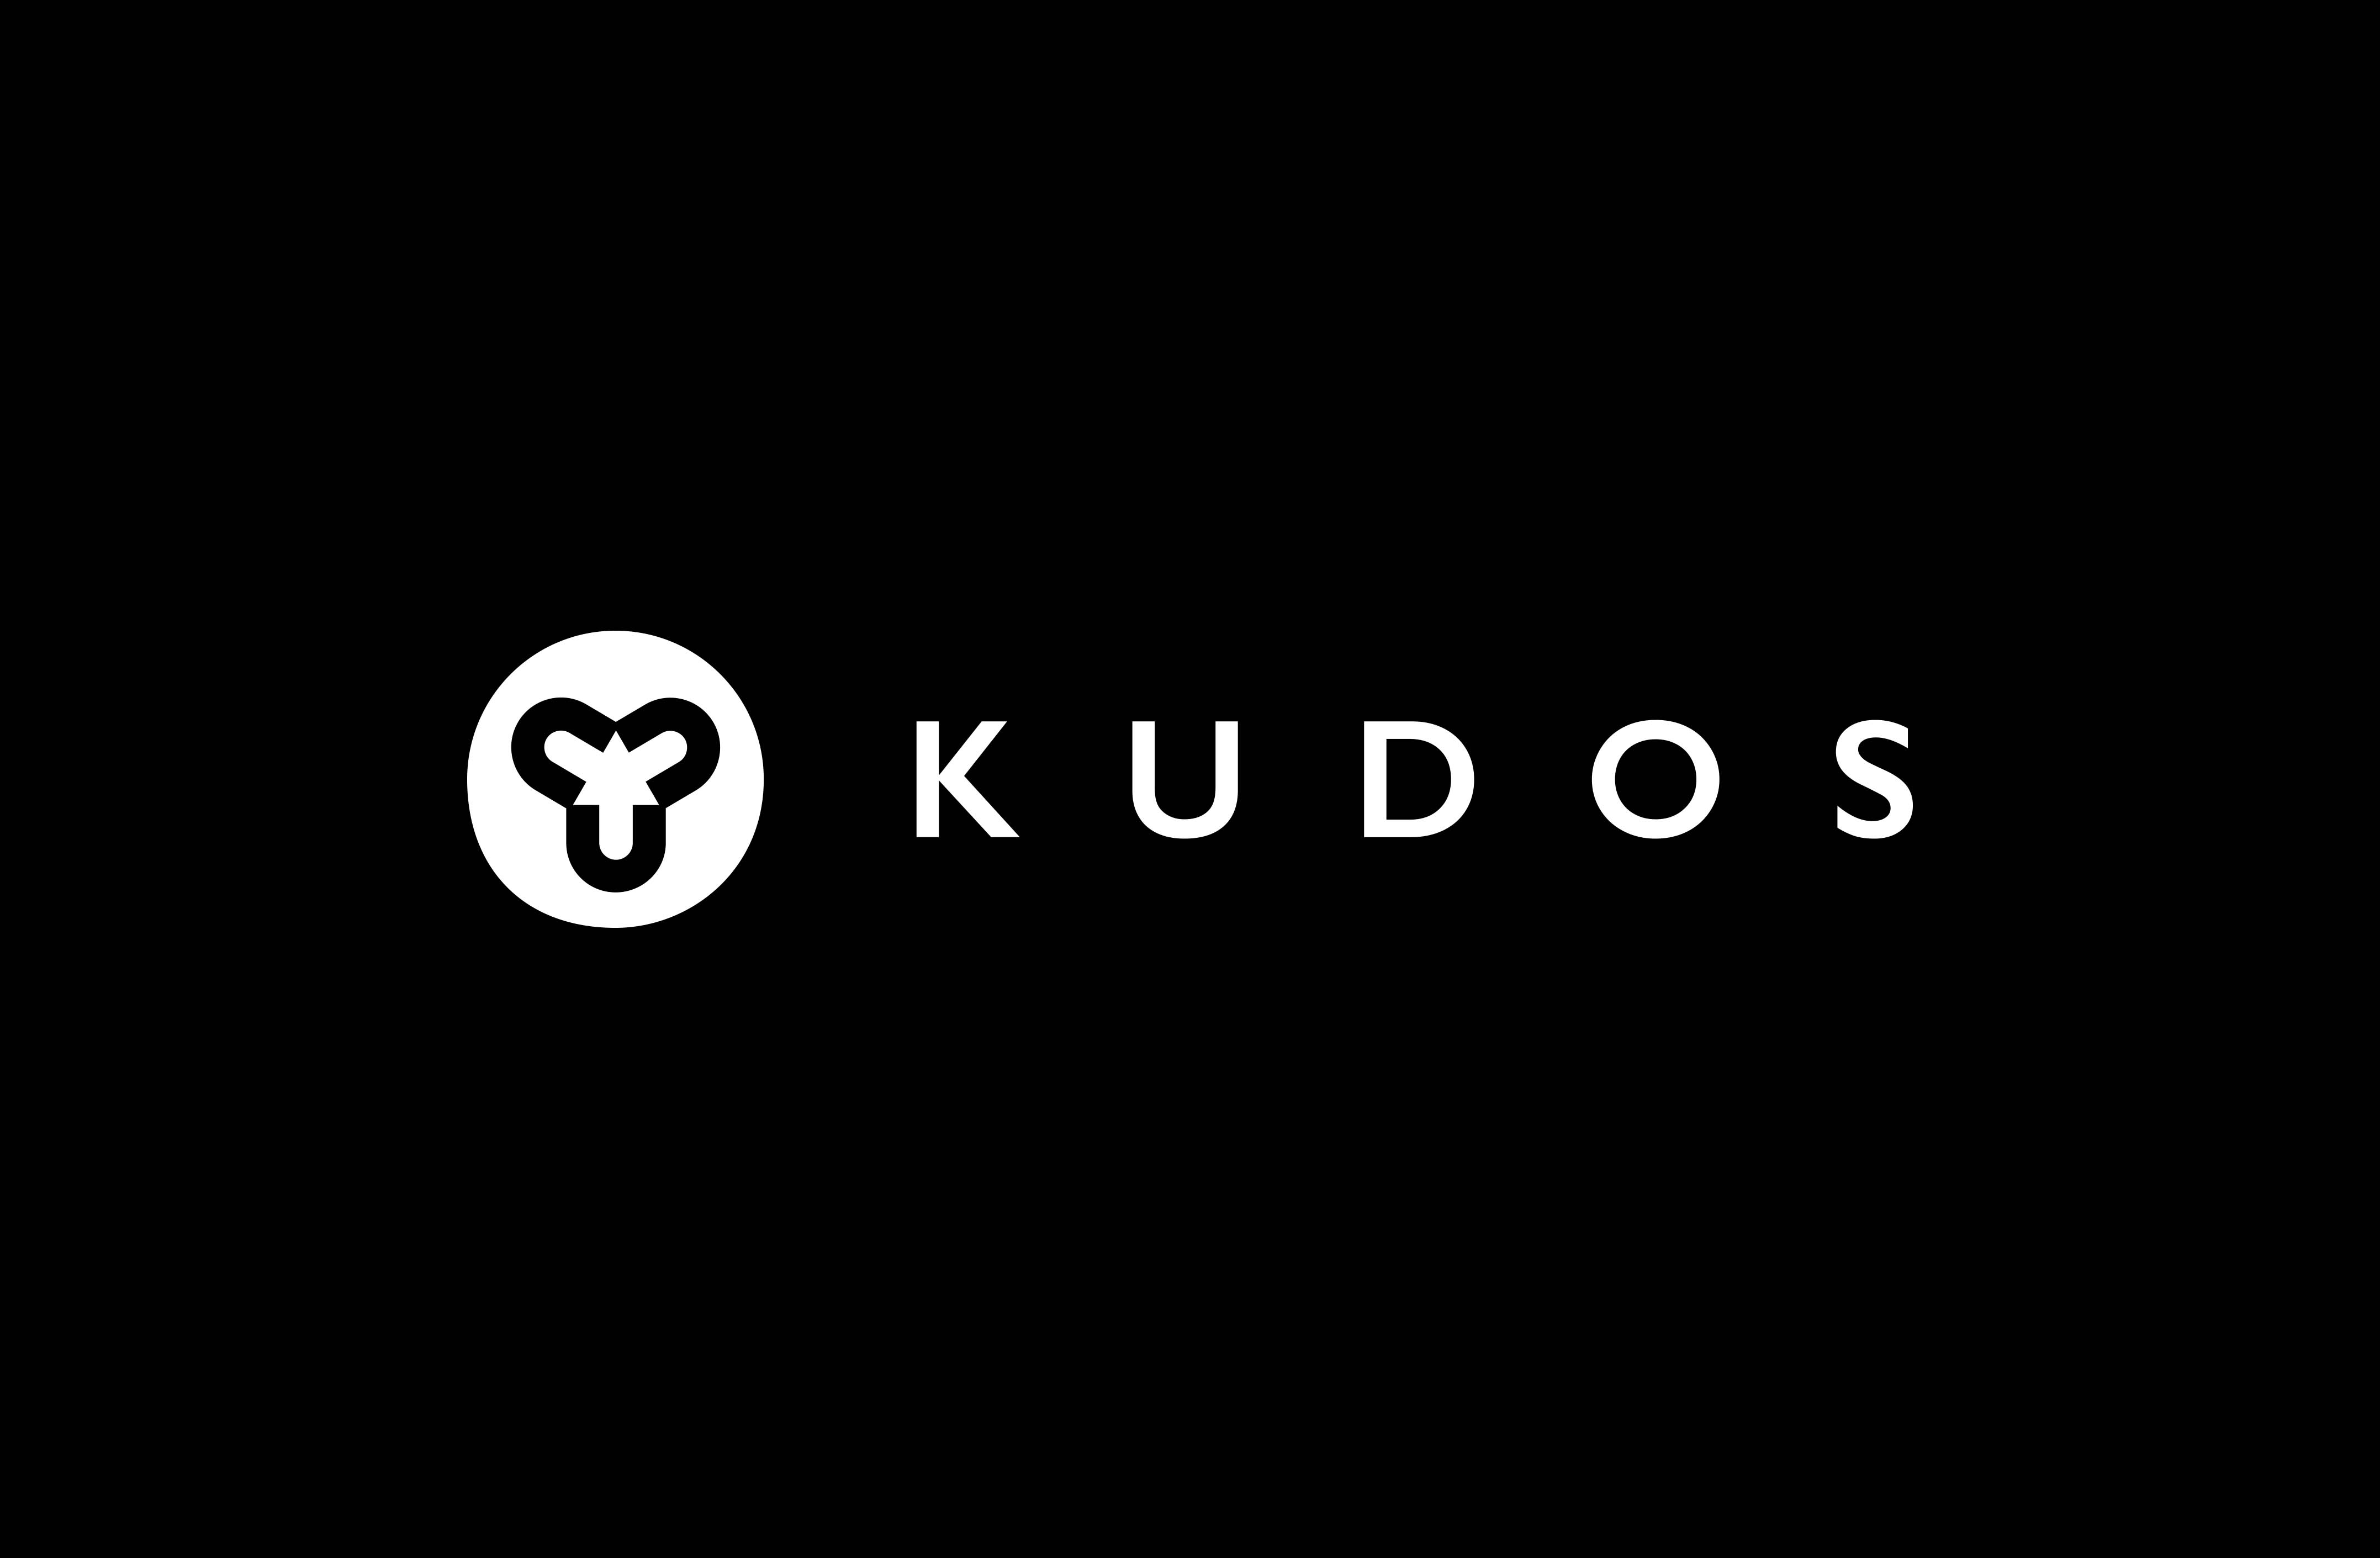 Kudos X2 makes its Russian debut